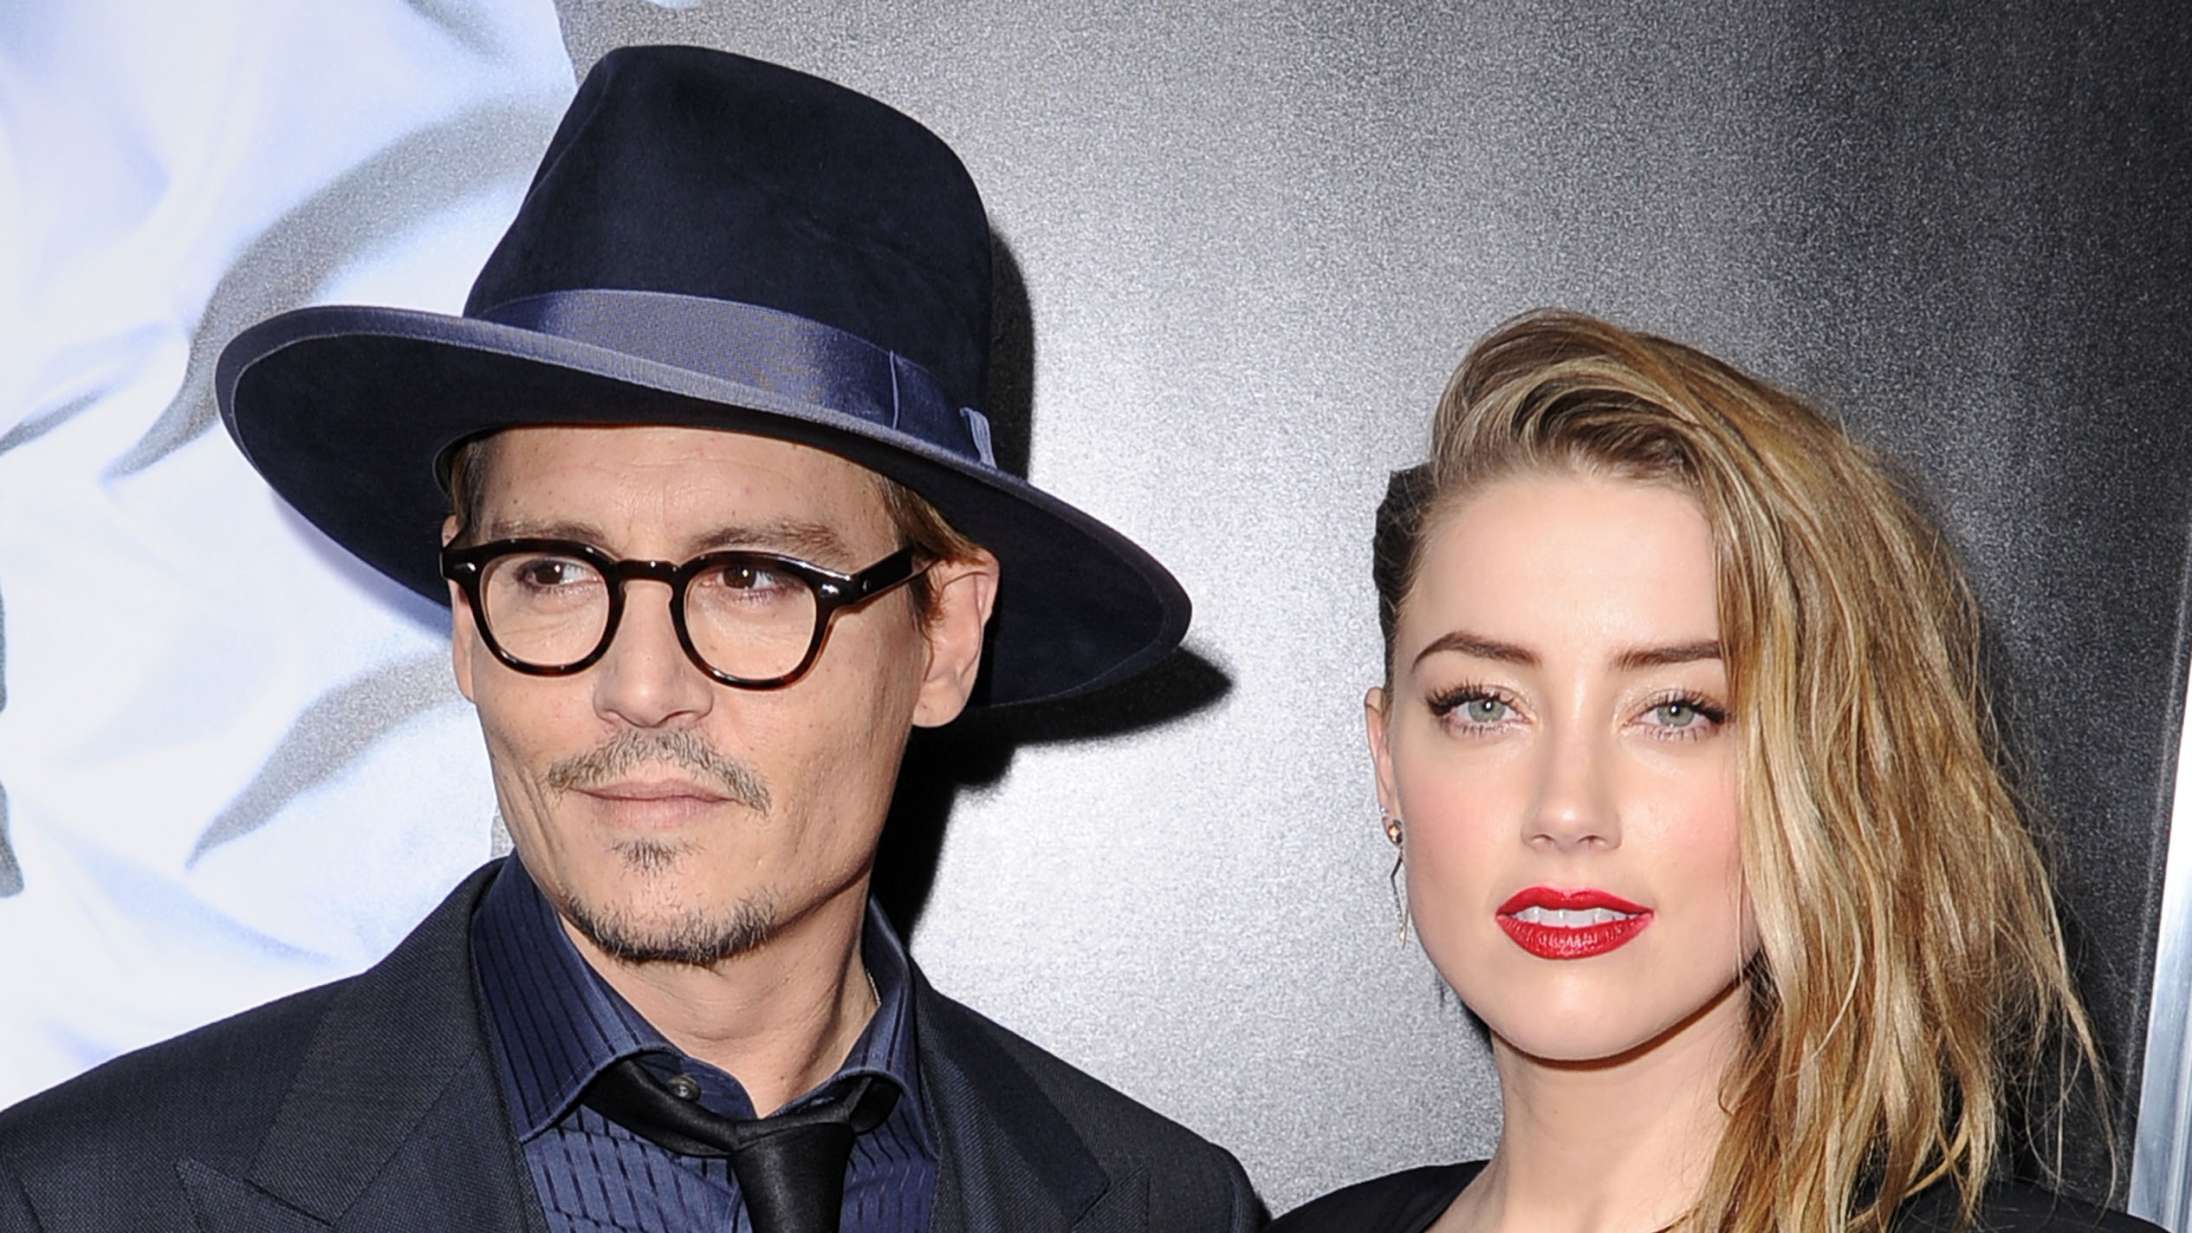 Youtubere tjente millioner på at livestreame retssagen mellem Johnny Depp og Amber Heard